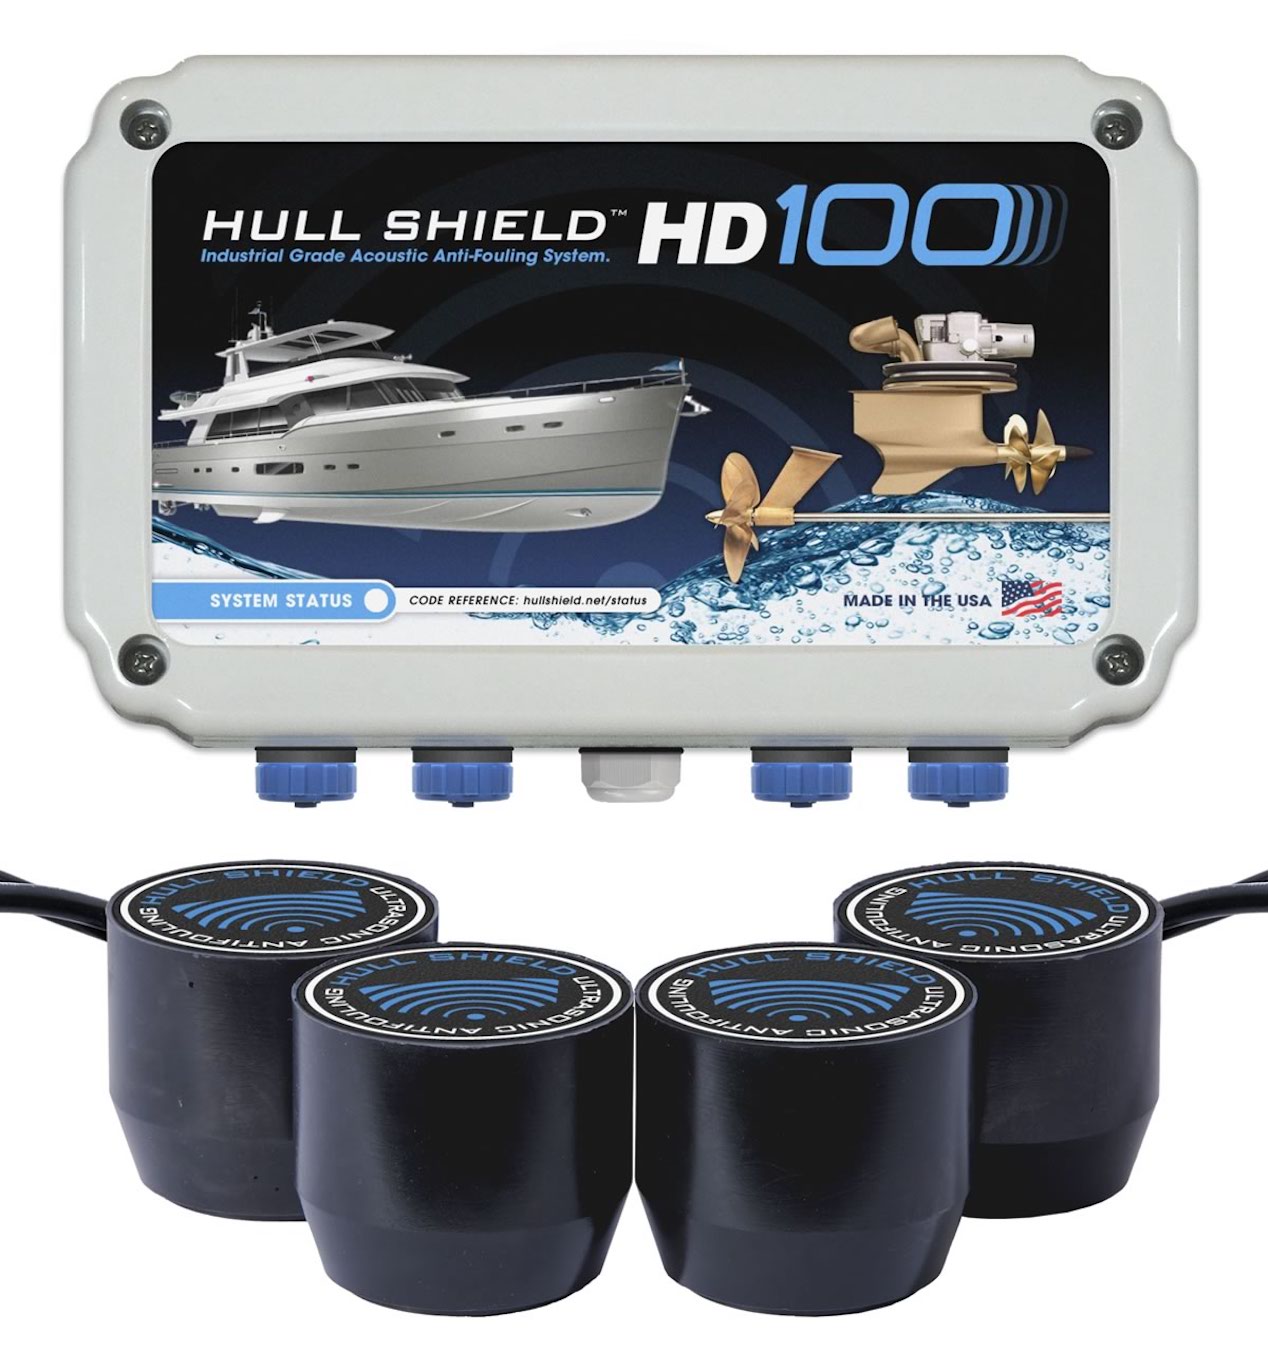 Hull Shield HD100